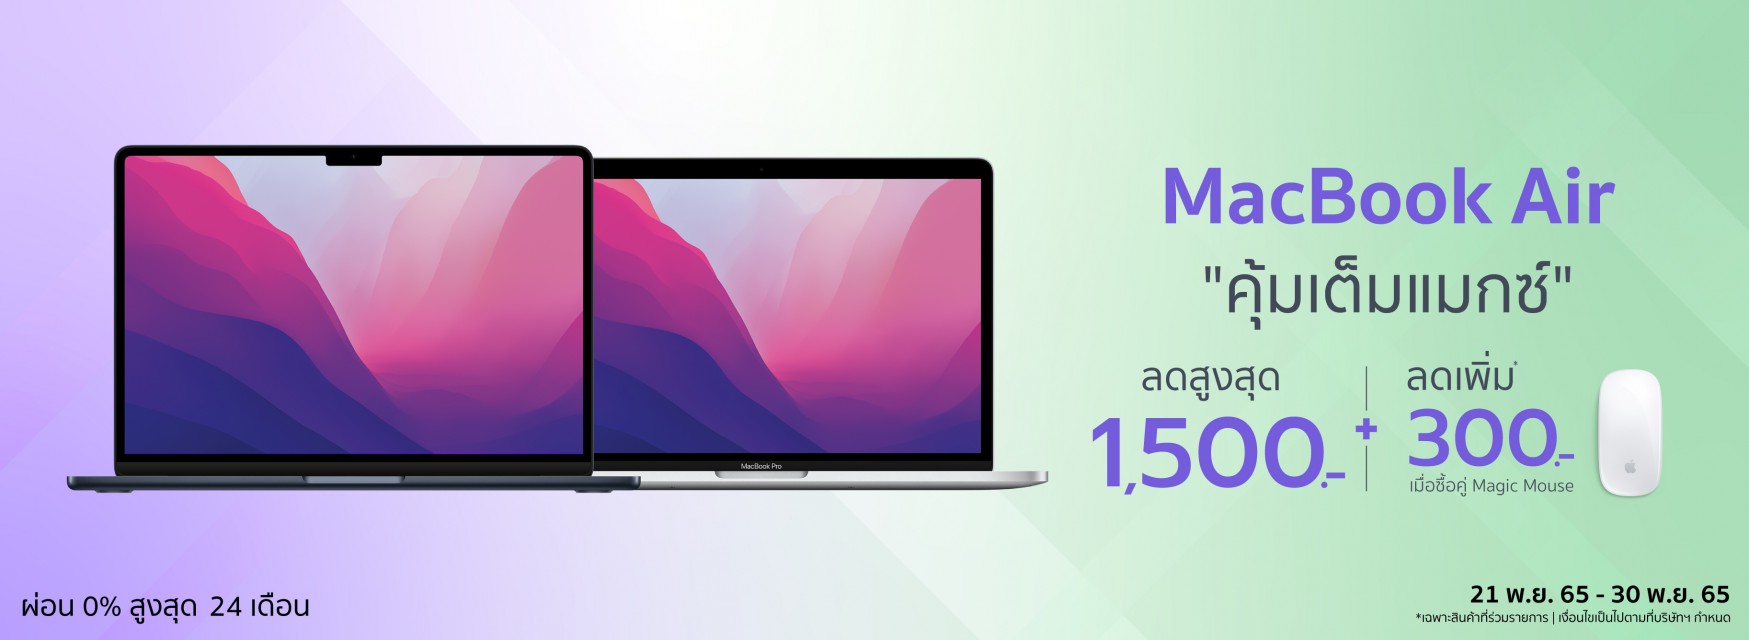 MacBook Bundle Deal